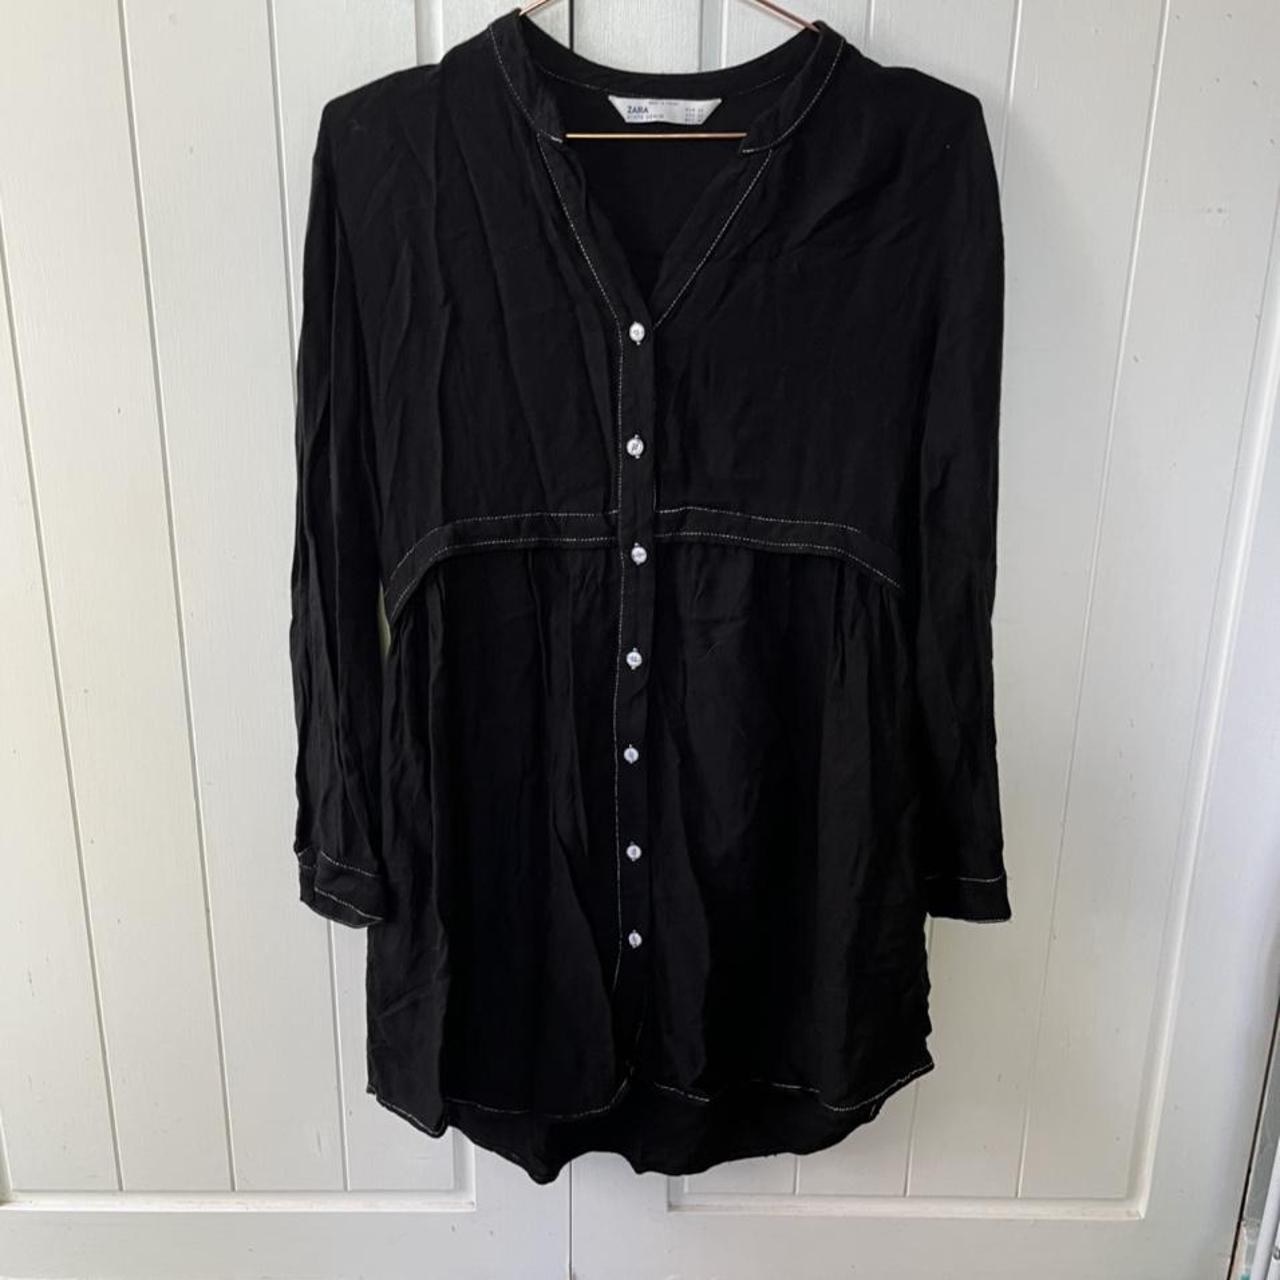 Zara shirt dress in black. Size XS. Free postage! - Depop